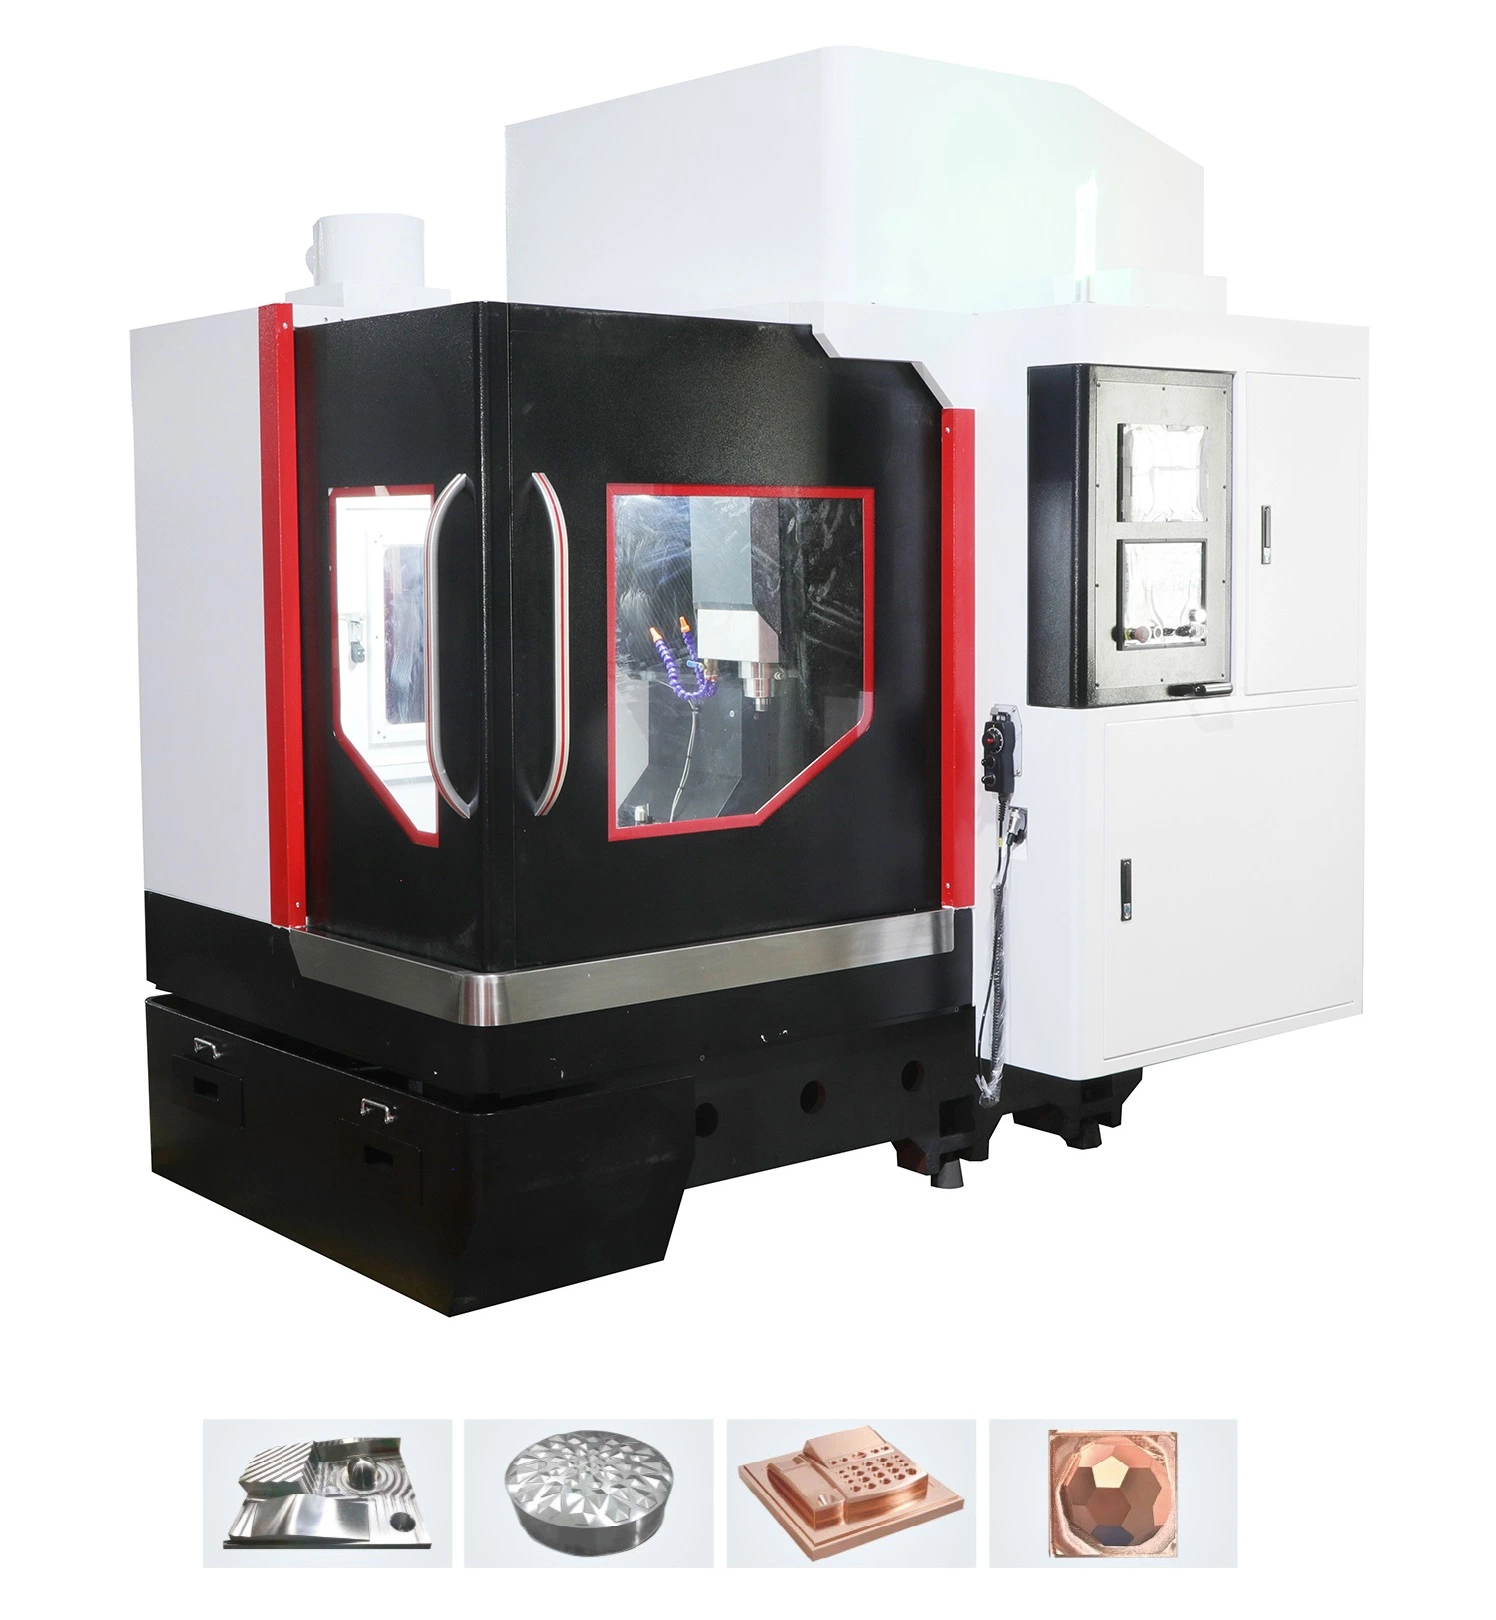 مركز ماكينة CNC الصغير 3 معالجة ماكينة التفريز CNC المحور بالنسبة للآلات المعدنية Mold CNC ماكينة التفريز